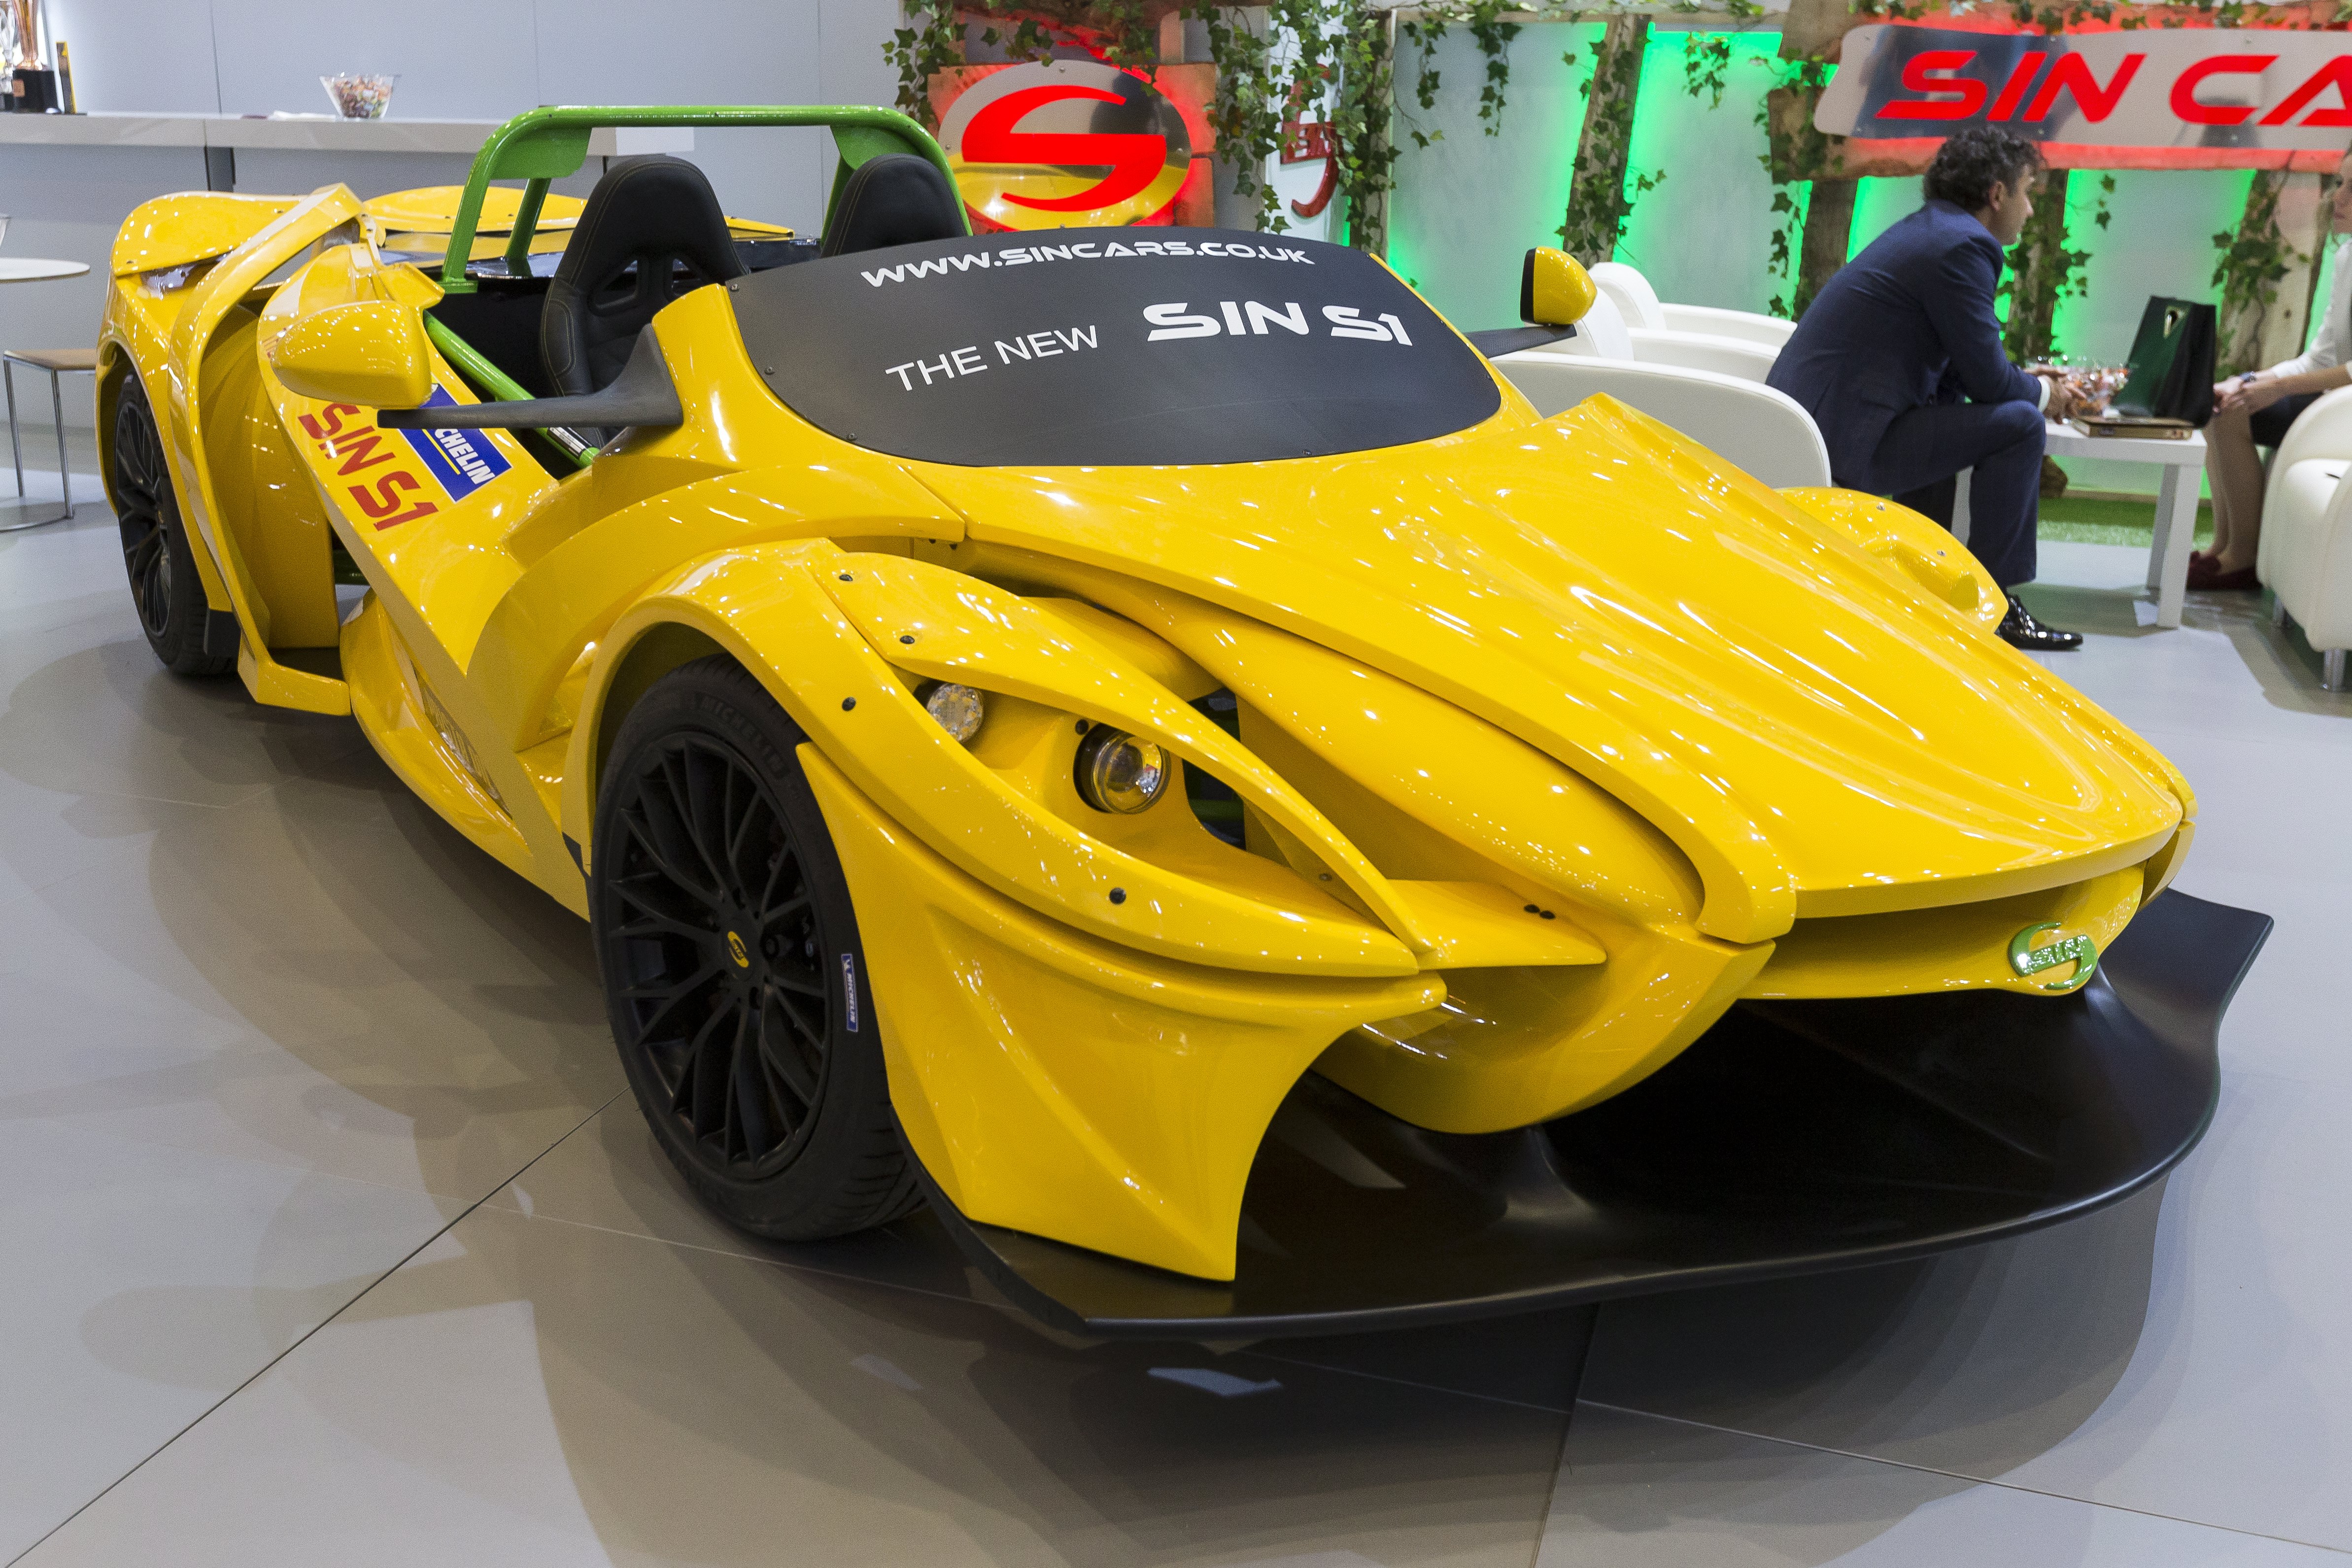 Жълтият S1 няма аналог на салона, тъй като представлява своеобразно автомобилно „Лего”. Определението на Росен Даскалов за това му творение е „достъпен модулен автомобил”.